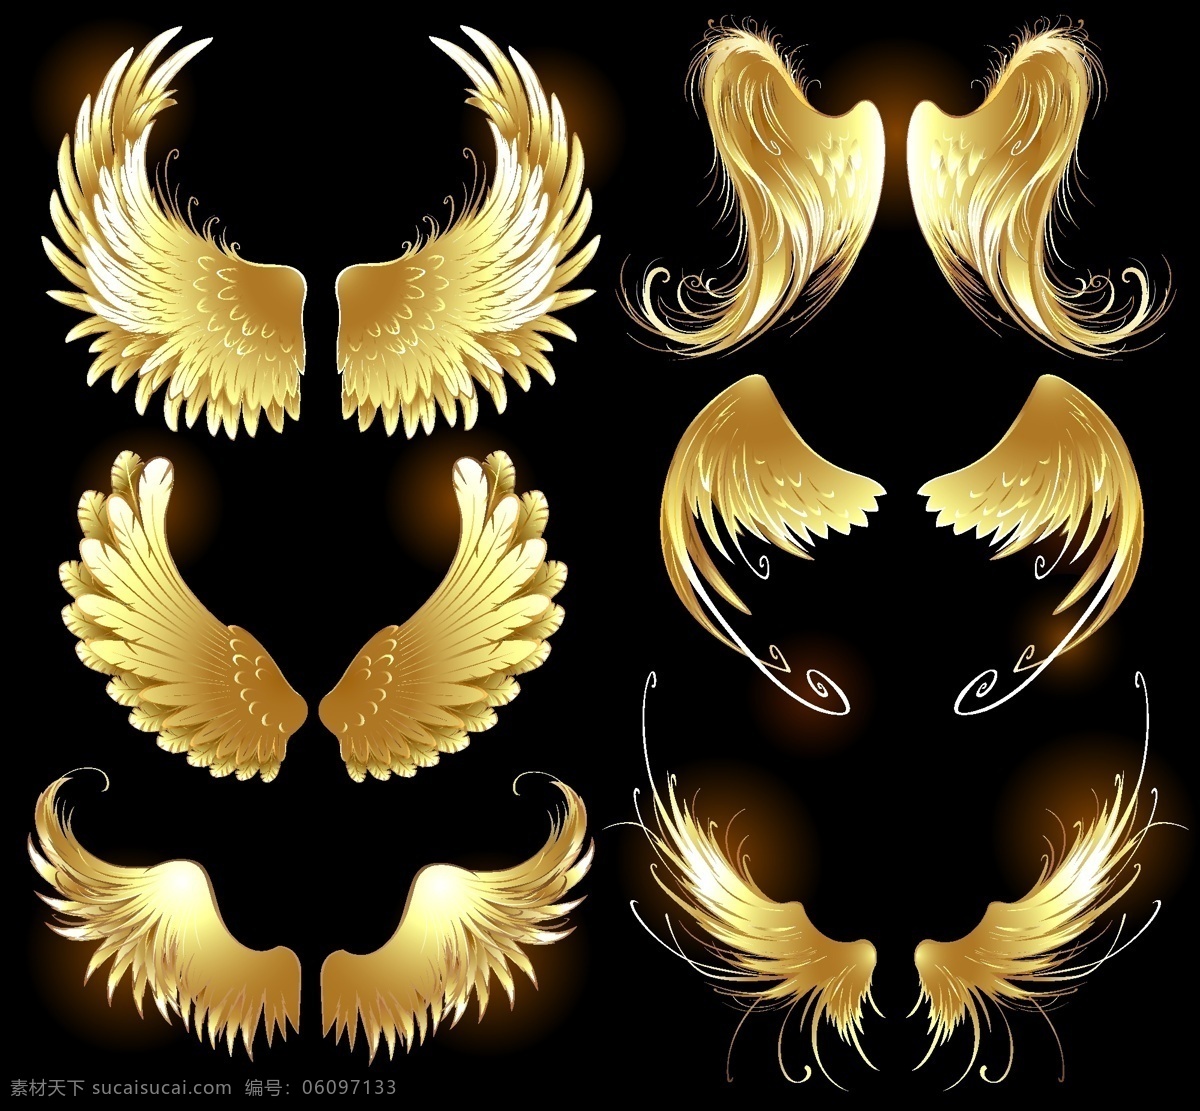 金黄色翅膀 羽毛 天使翅膀 翅膀设计 翅膀素材 鸟类翅膀 纹身图案 手绘 矢量 黑色